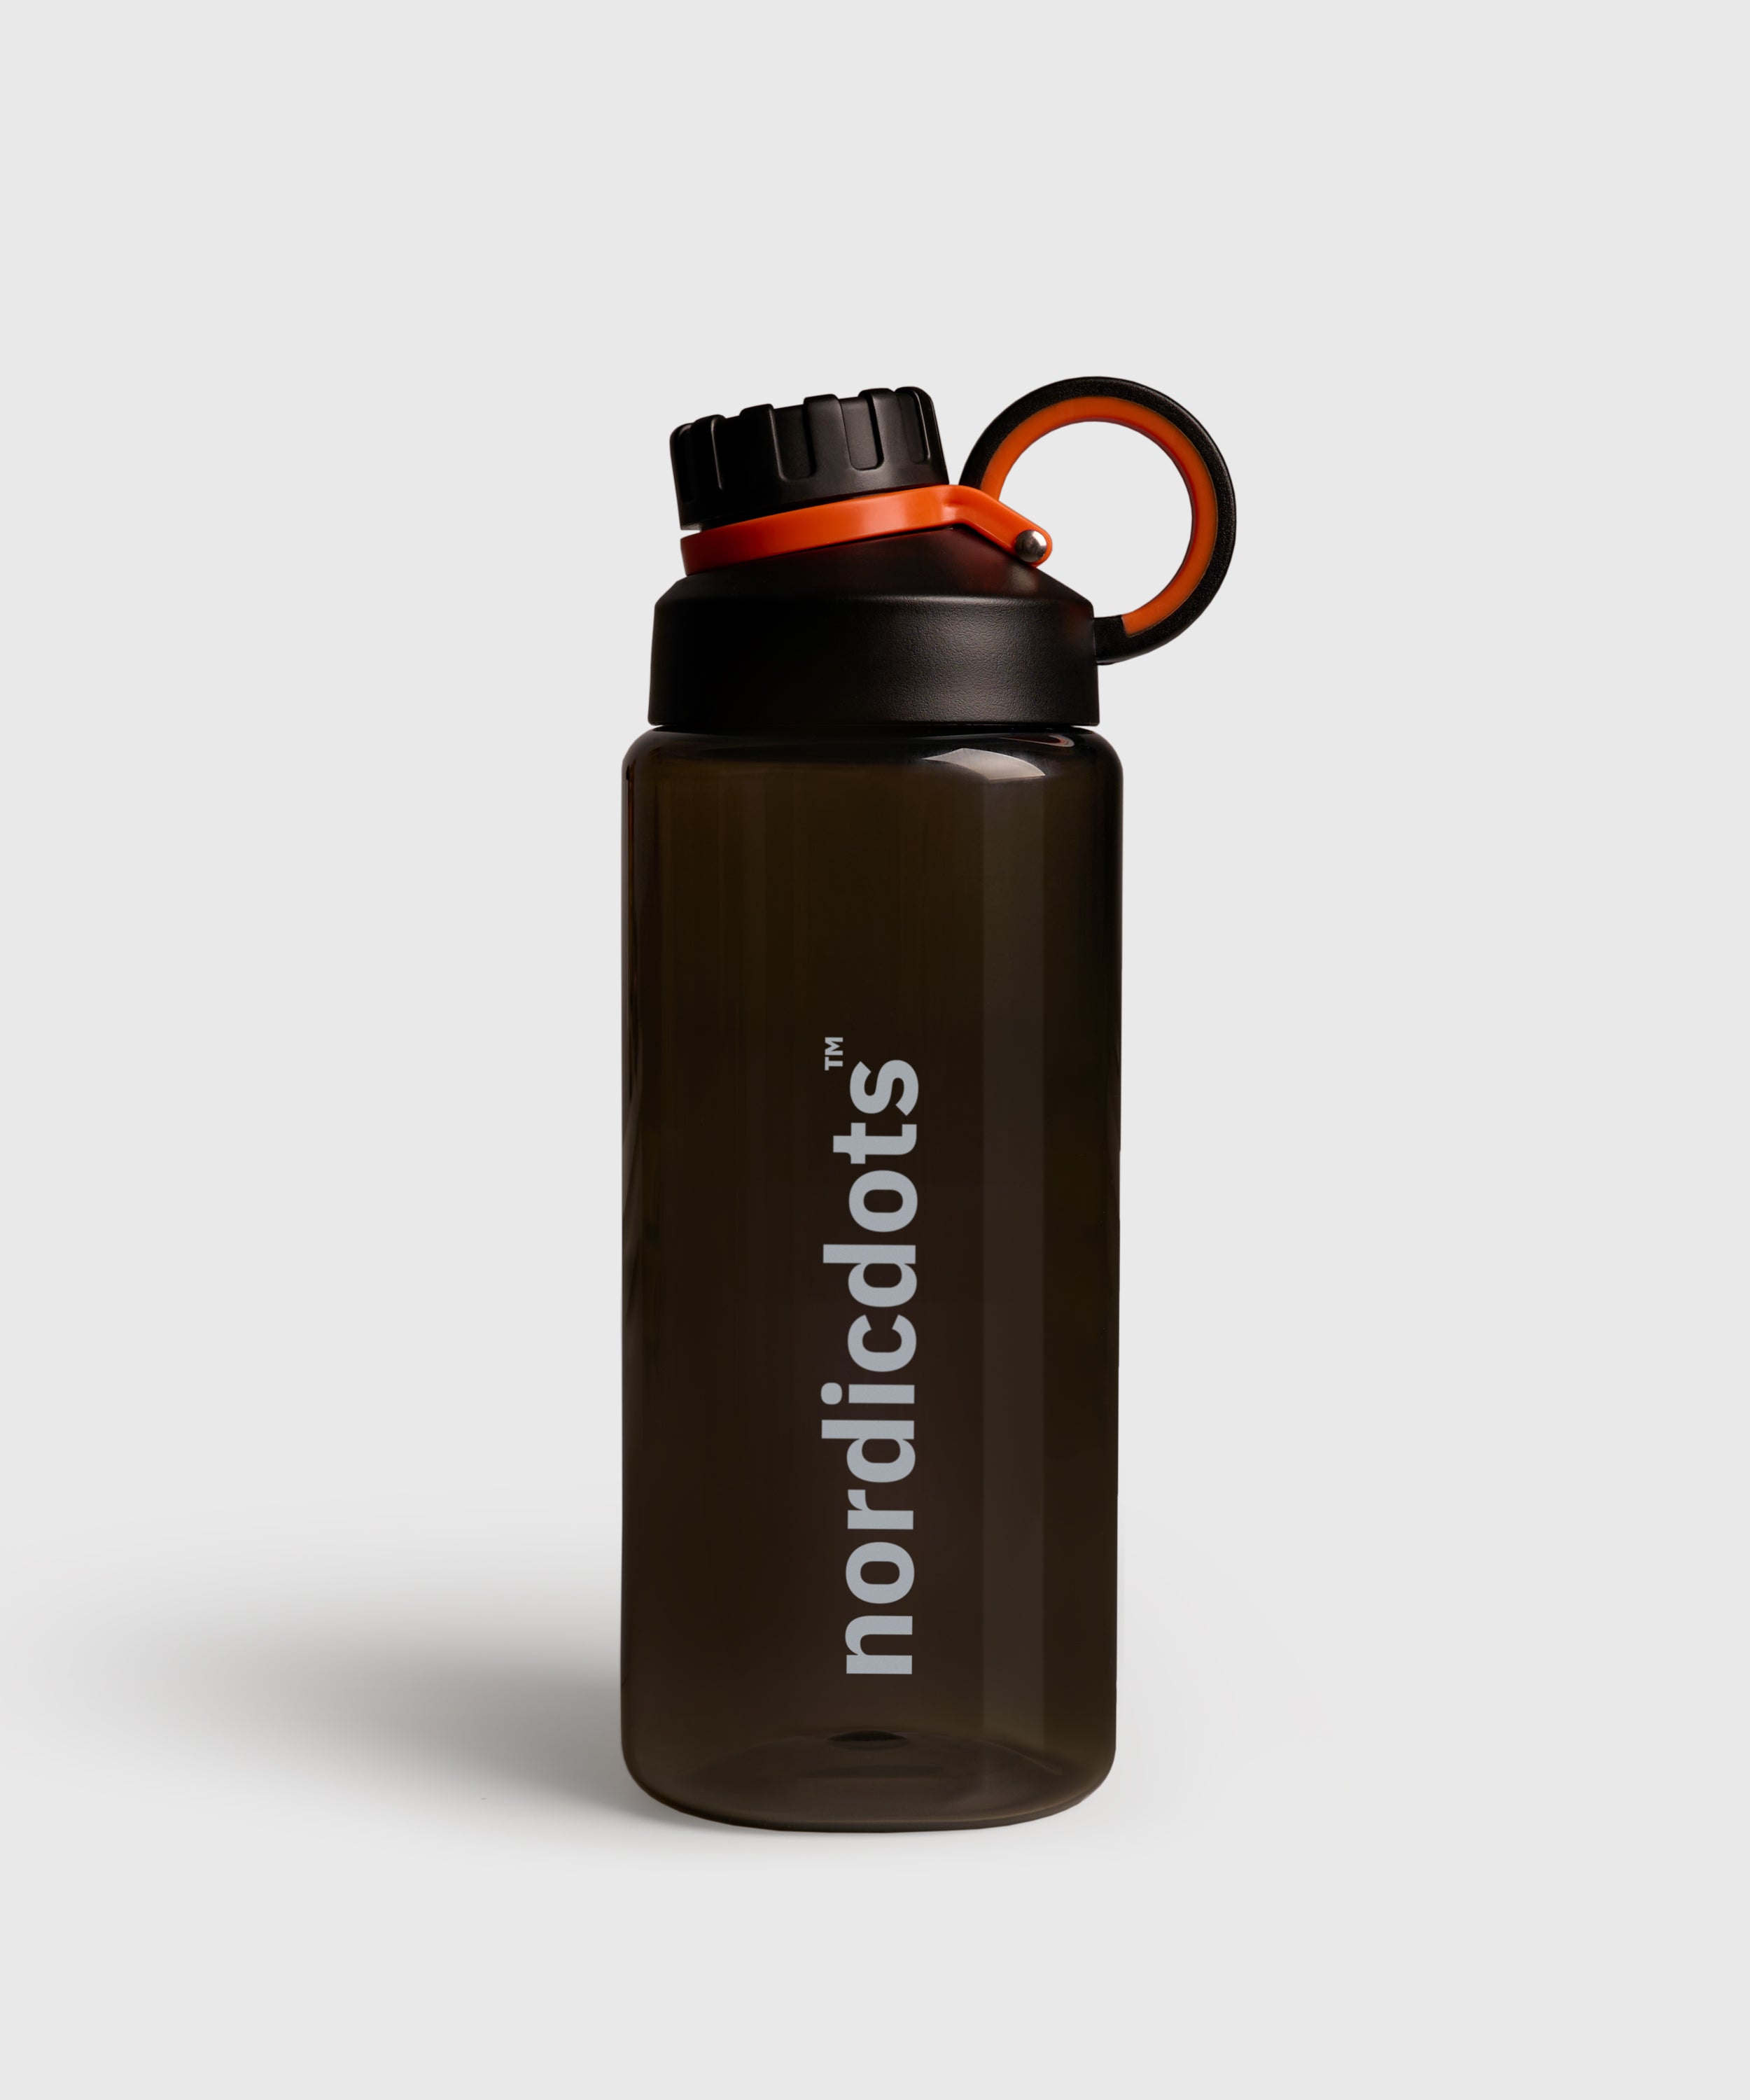 https://nordicdots.com/cdn/shop/products/shake-me-bottle-black-water-shaker-nordicdots-nordicdots.com-1.jpg?v=1679622065&width=2500